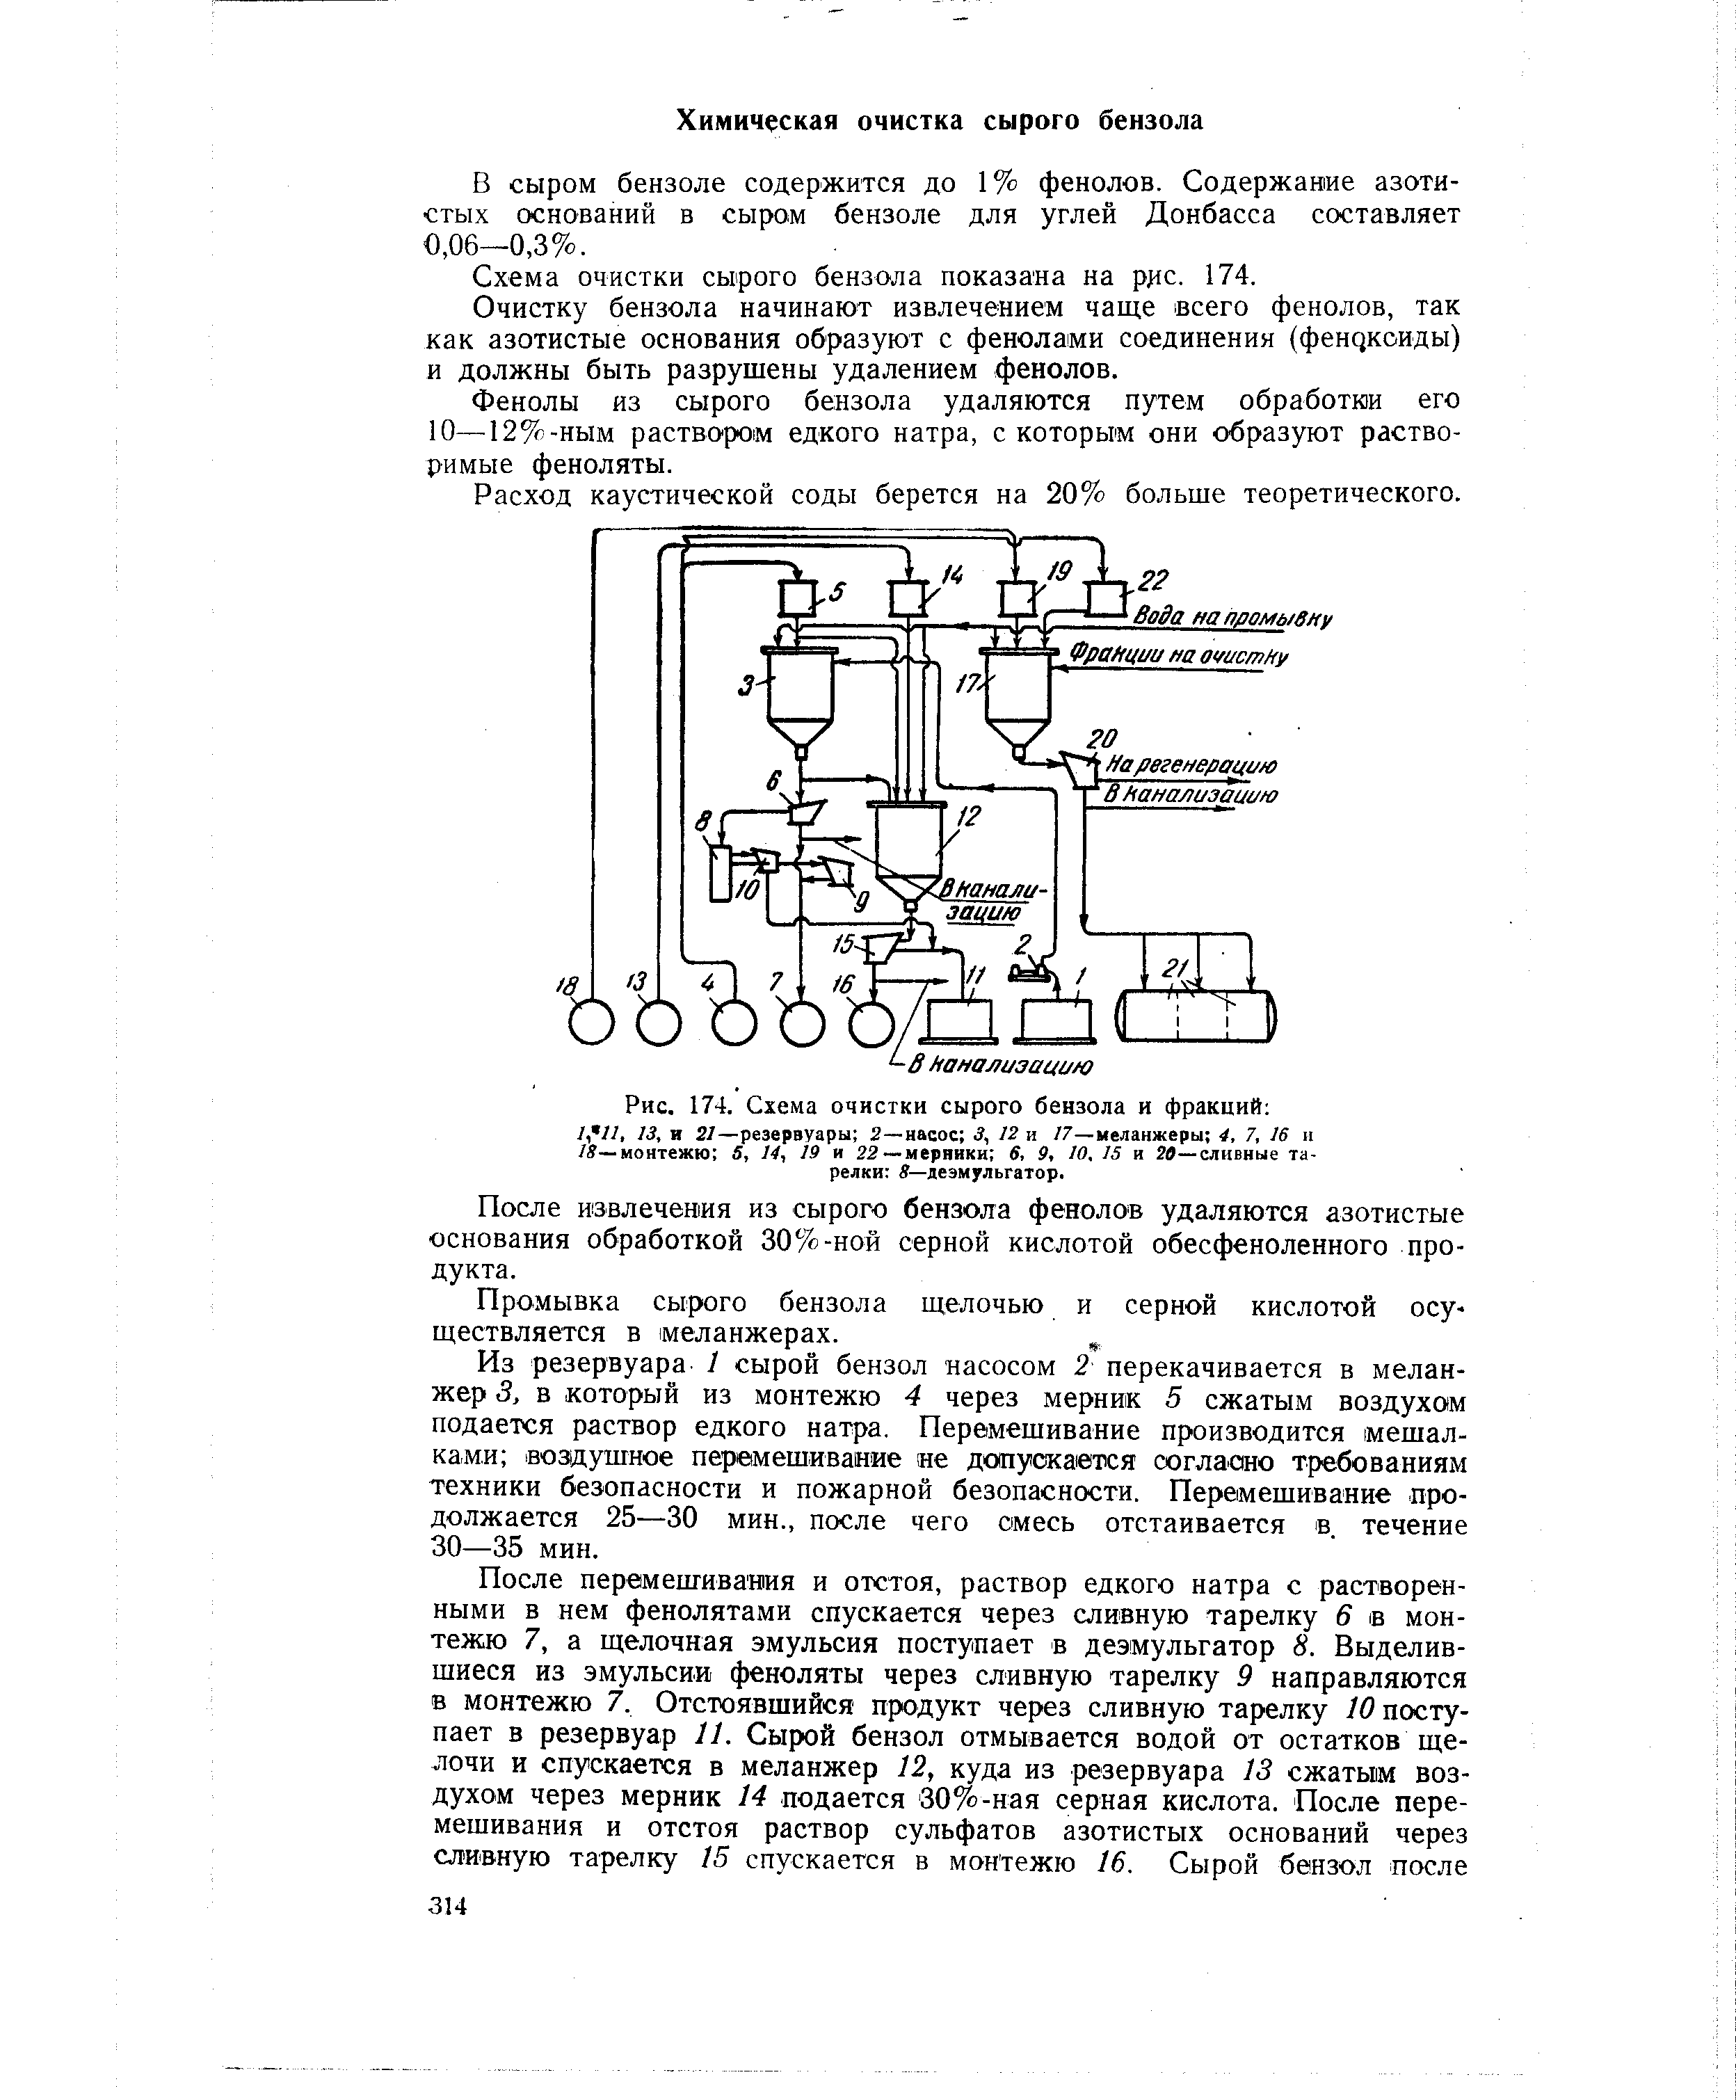 Схема ОЧИСТКИ сырого бензола показана на р с. 174.